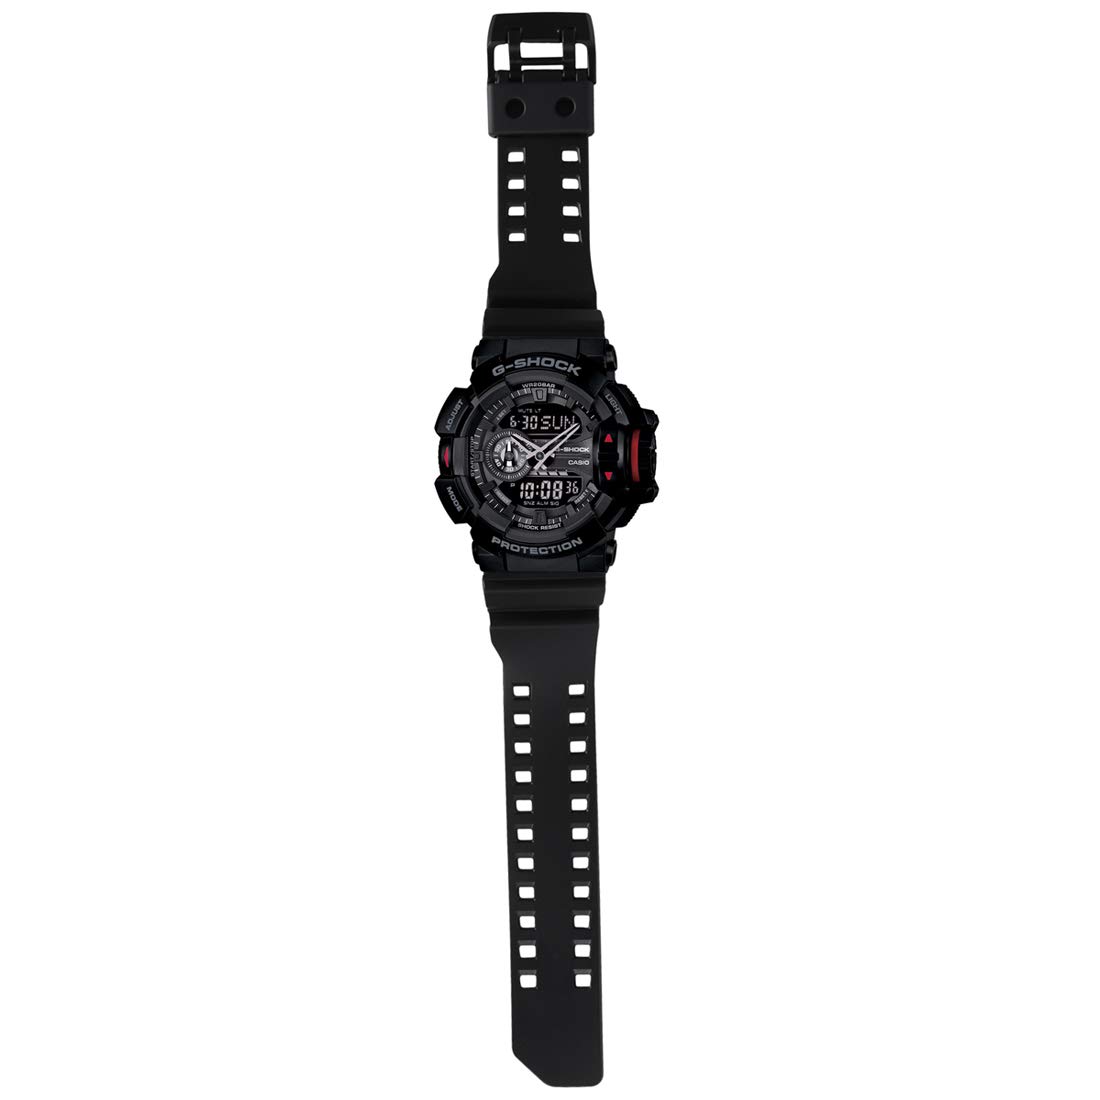 Casio G-Shock GA-400-1B Multi-Dimensional Analog Digital Watch